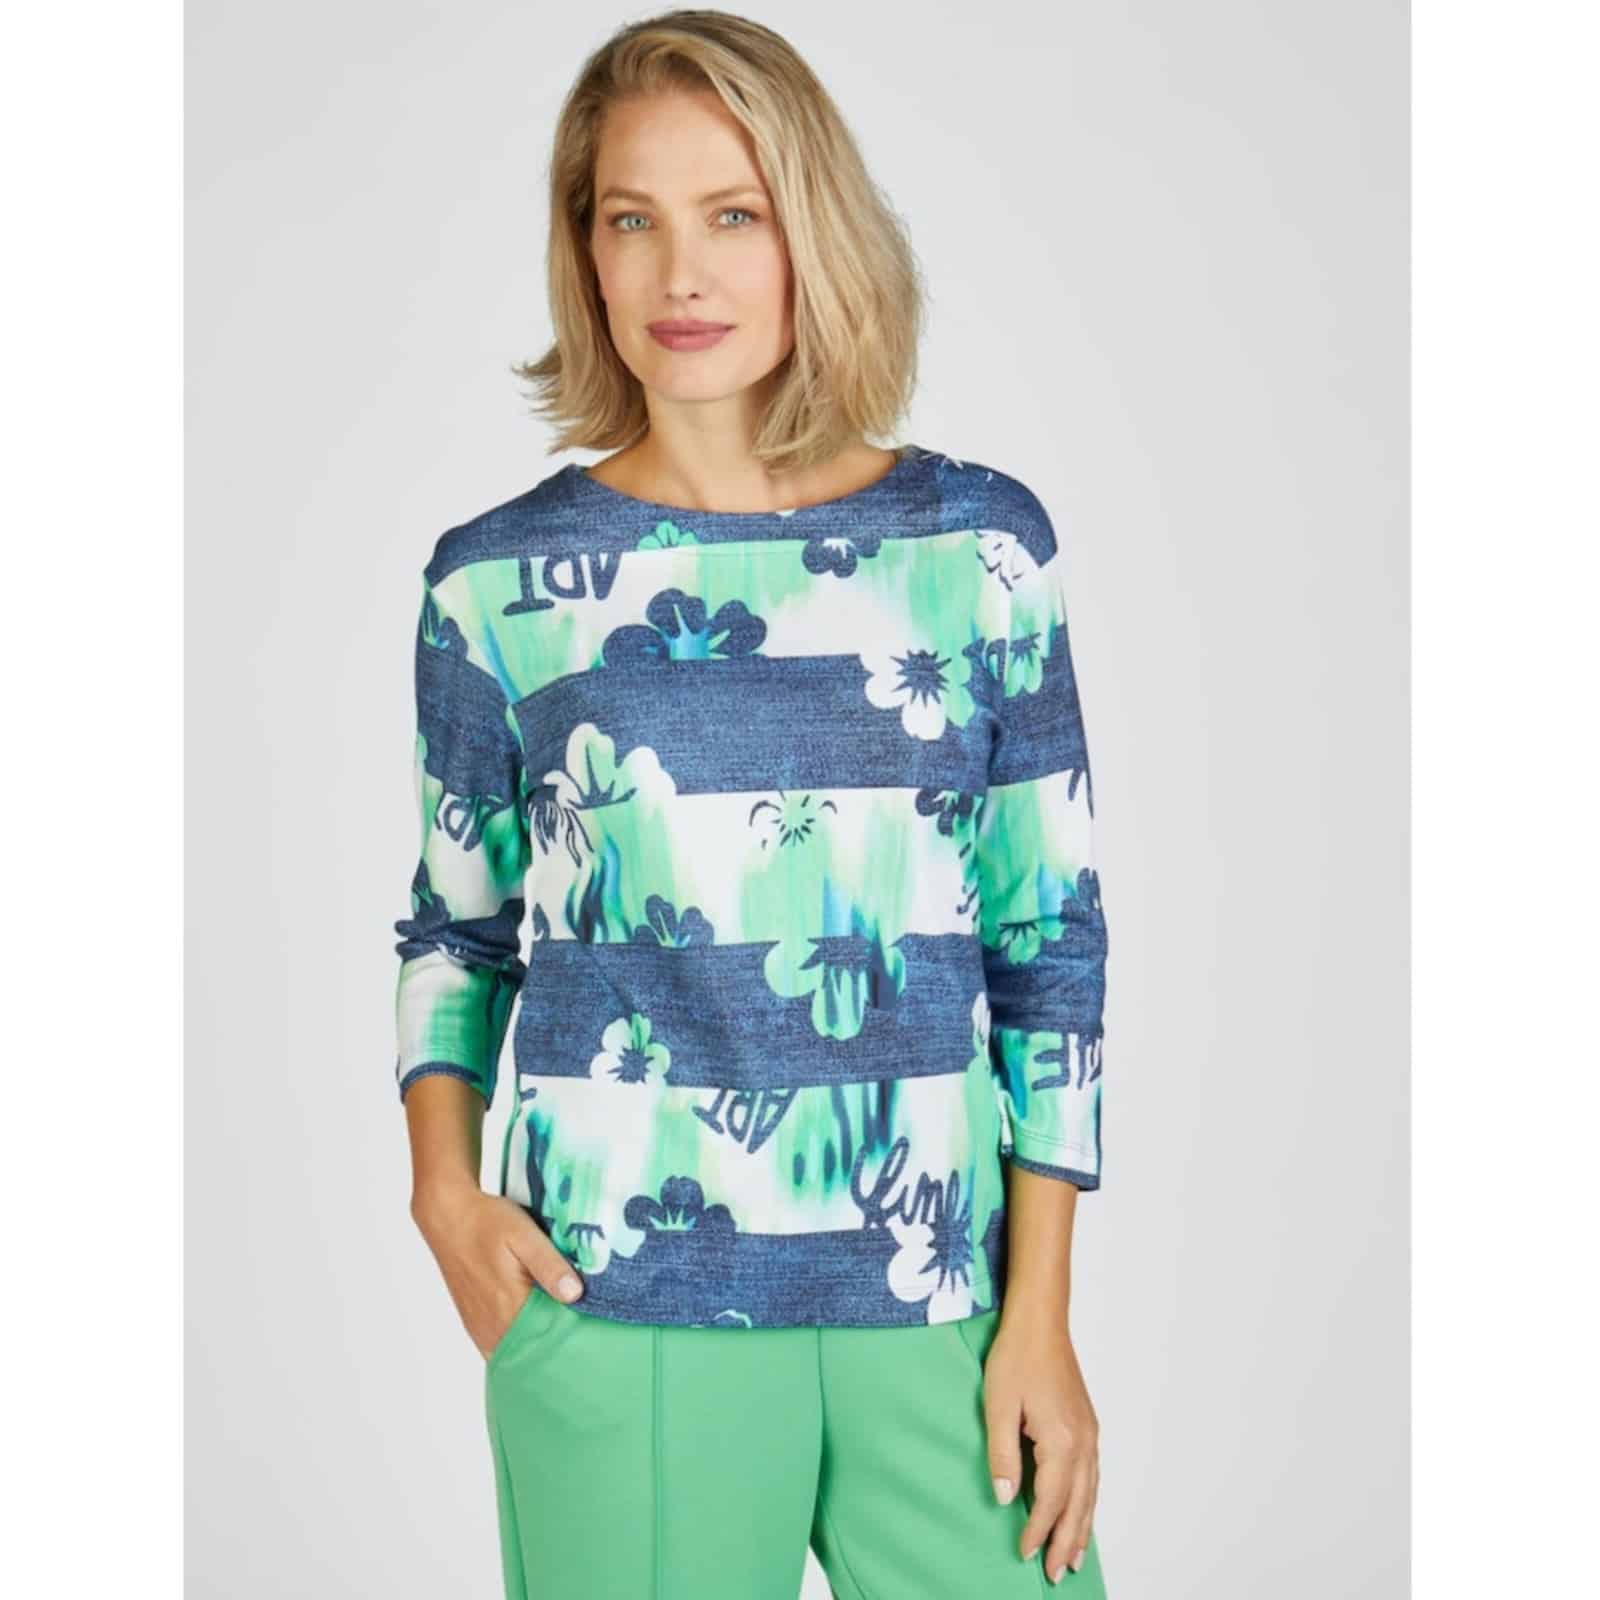 Sweatshirt gestreift mit Blumenmuster in Blau- und Grüntönen, 3/4 Arm und Rundhals Artikel 52-114353